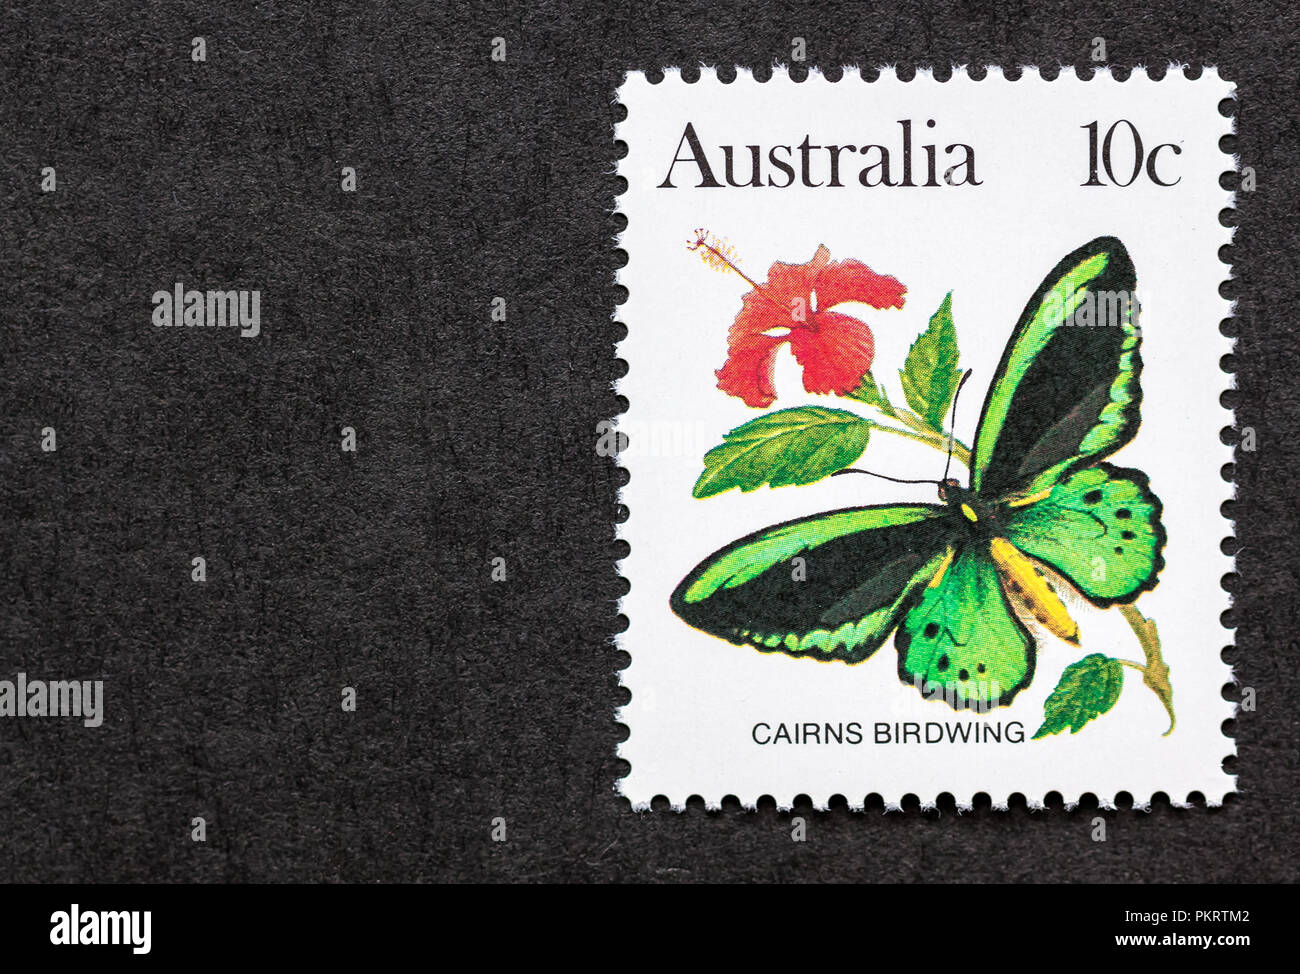 Mint Australien Stempel mit der Darstellung eines männlichen Cairns birdwing Butterfly (Ornithoptera euphorion) Stockfoto